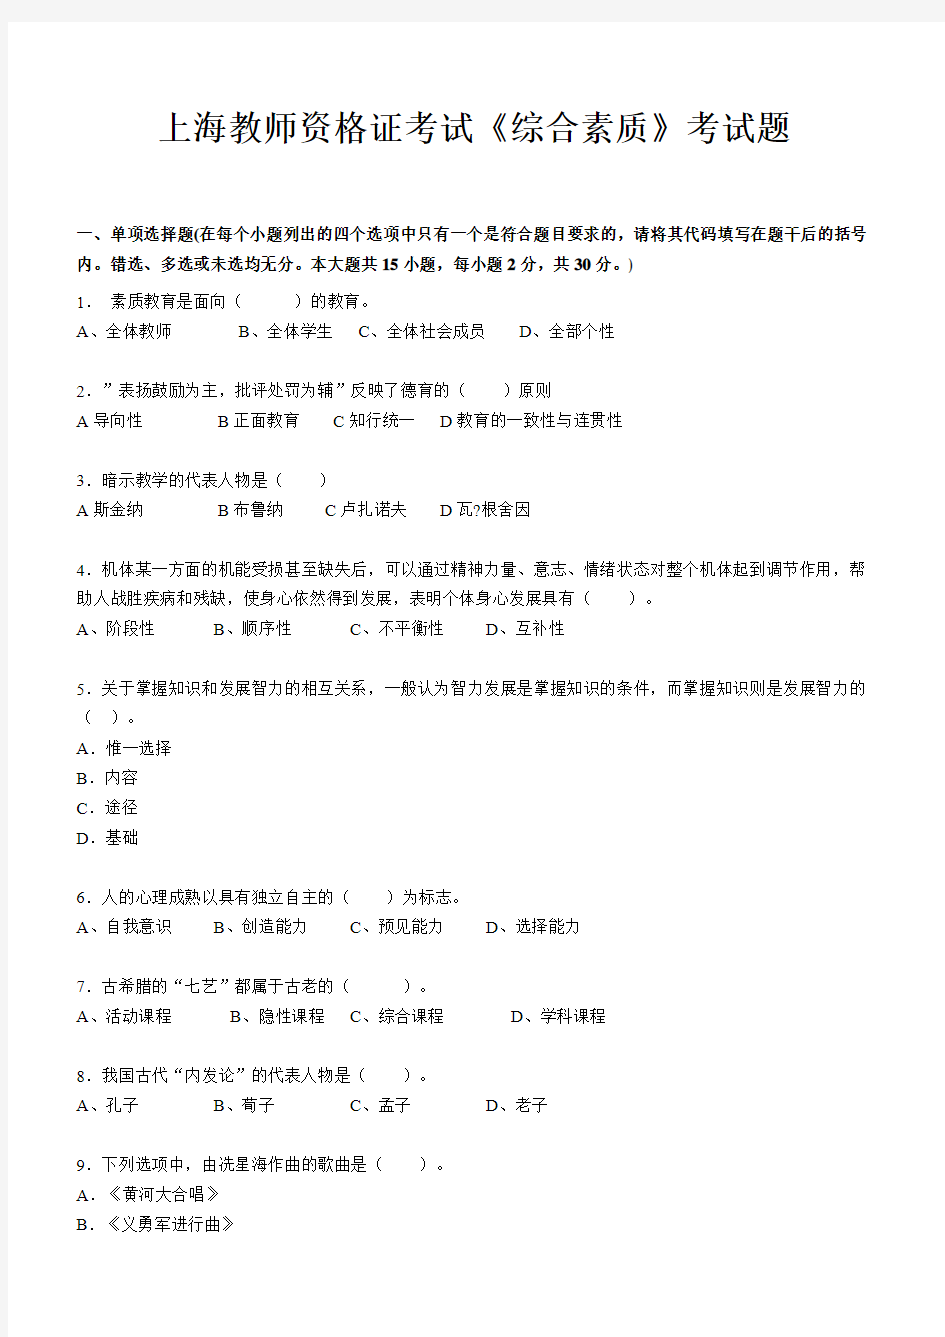 上海教师资格证考试《综合素质》考试题